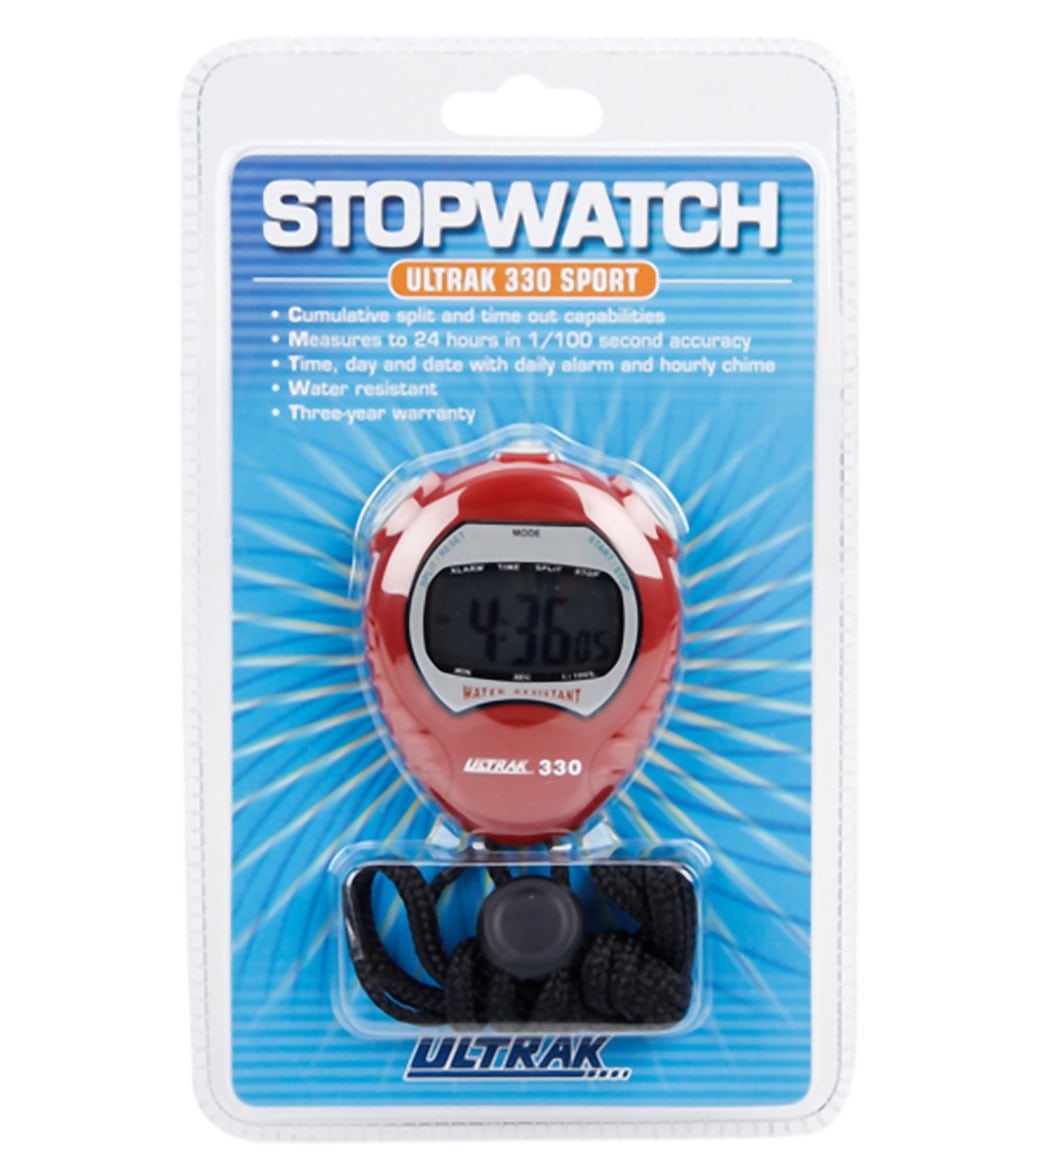 Ultrak 330 Jumbo Display Stopwatch